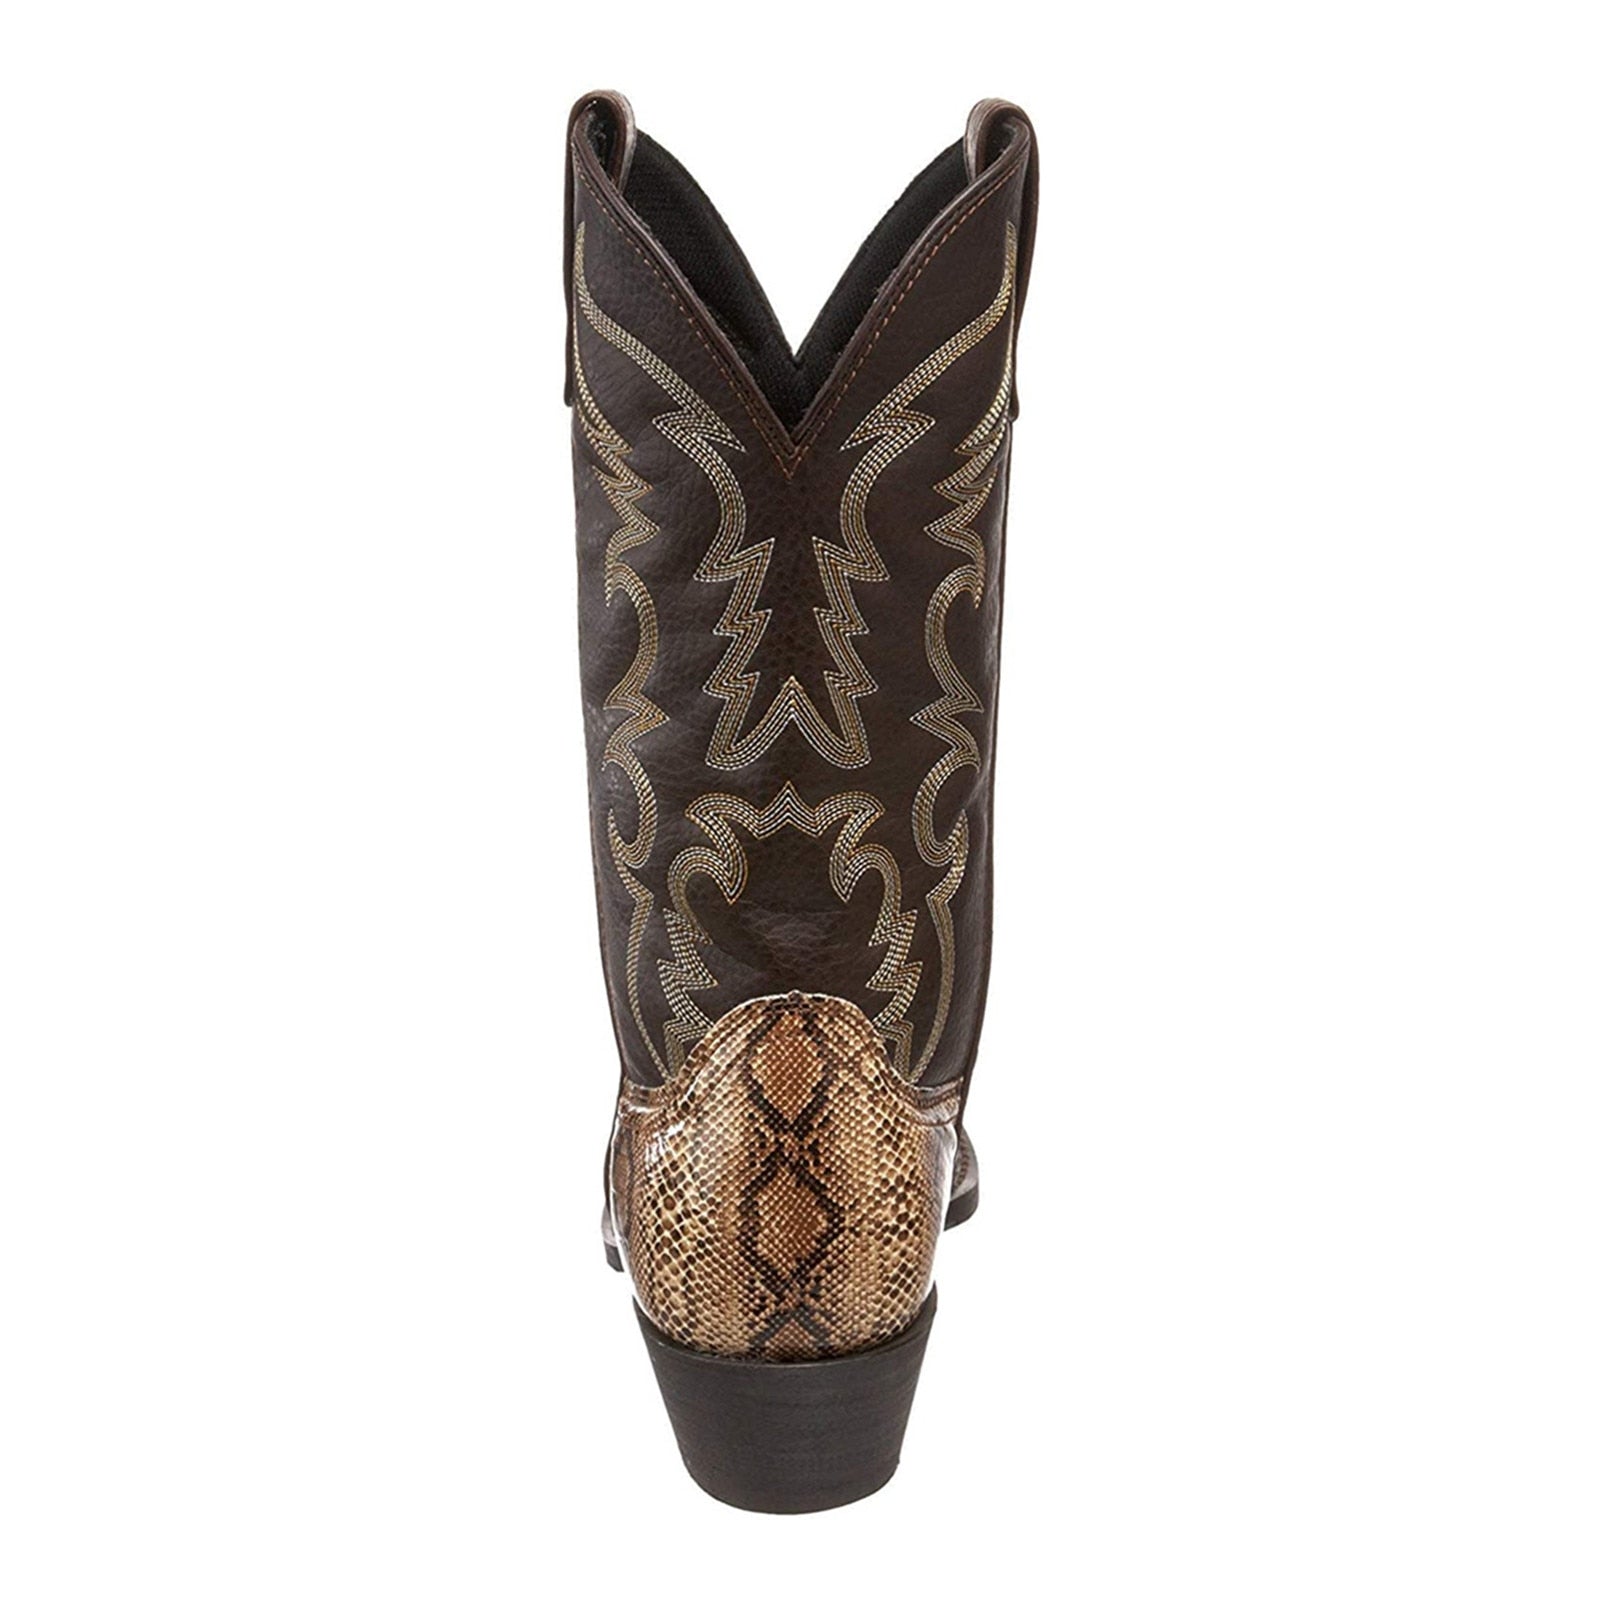 Autumn/Winter Serpentine Western Cowboy Boots - Fashion Damsel